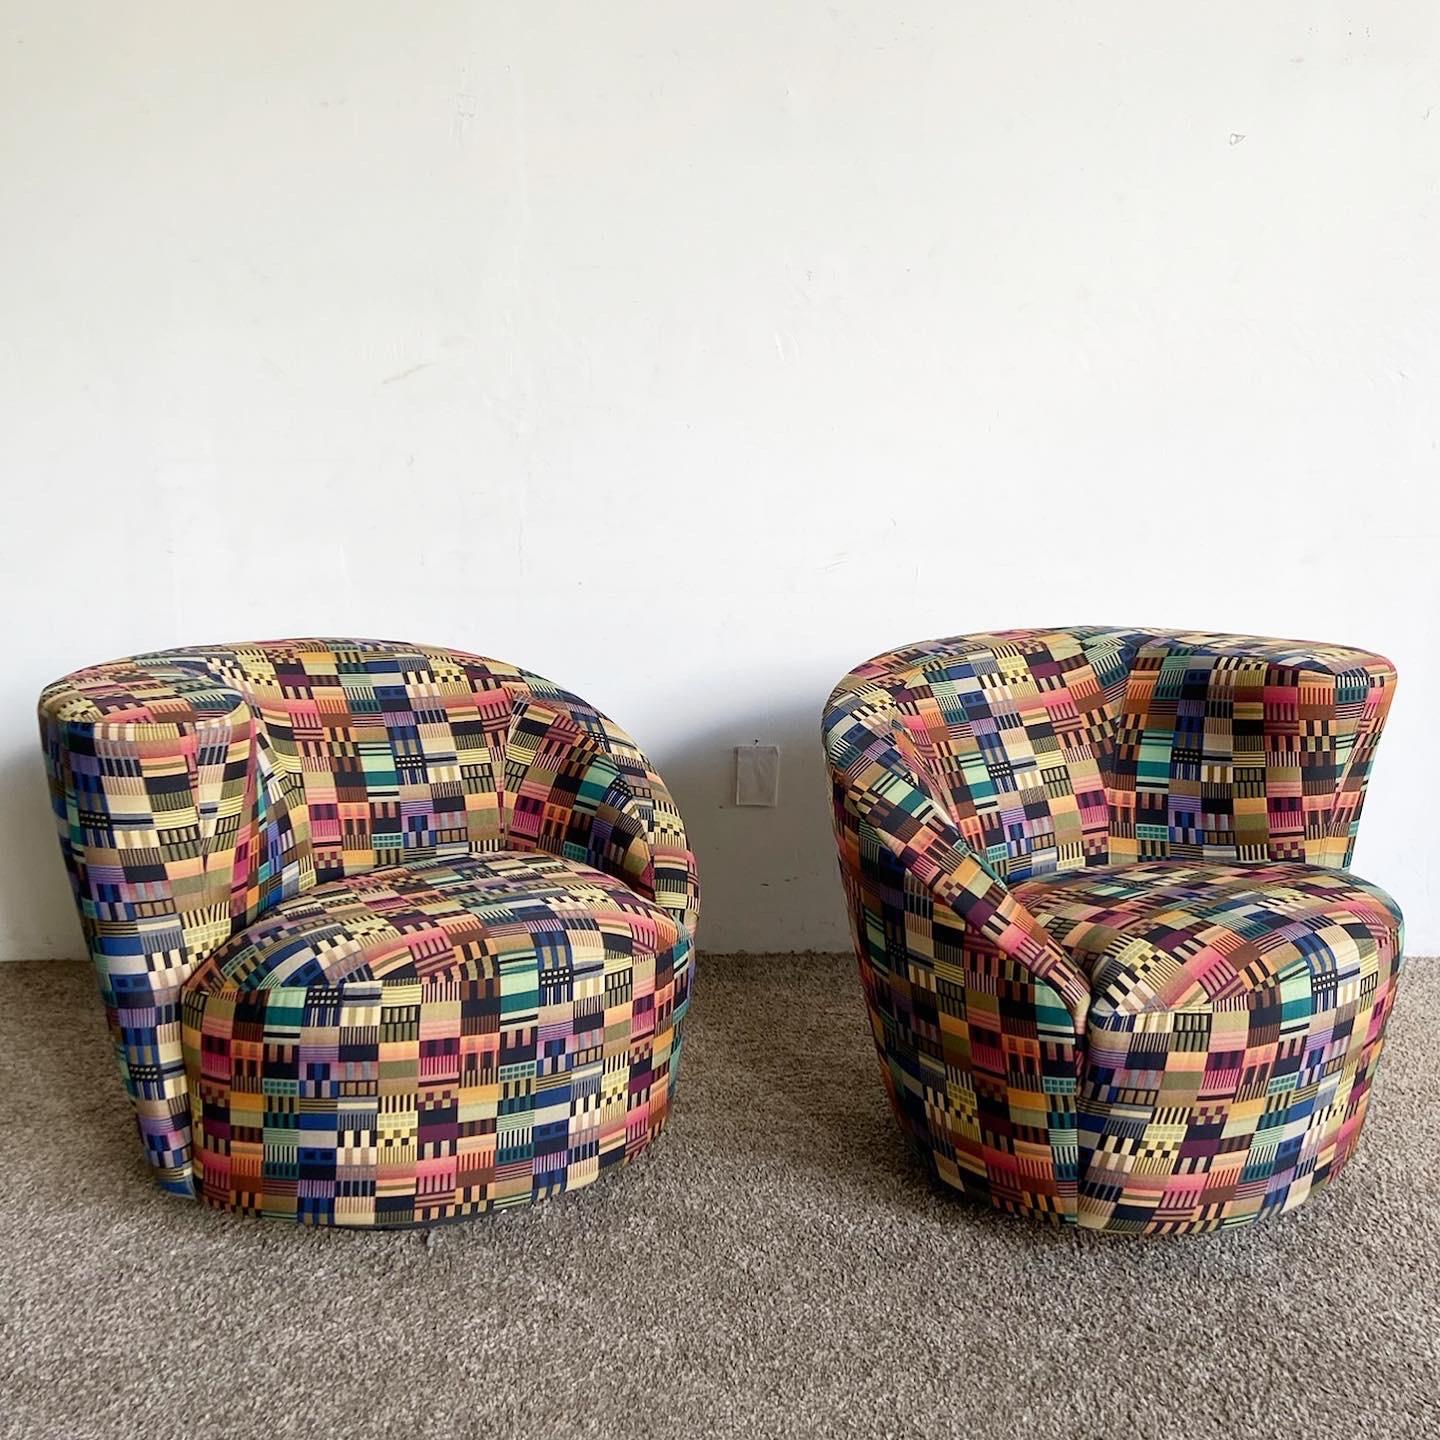 Erleben Sie eine lebendige Mischung aus Komfort und Design mit unseren postmodernen Vladimir Kagan Style Multicolor Nautilus Swivel Chairs. Dieses Paar zeigt ein kaleidoskopisches Stoffmuster in einem Spektrum von Regenbogentönen, das mit abstrakten